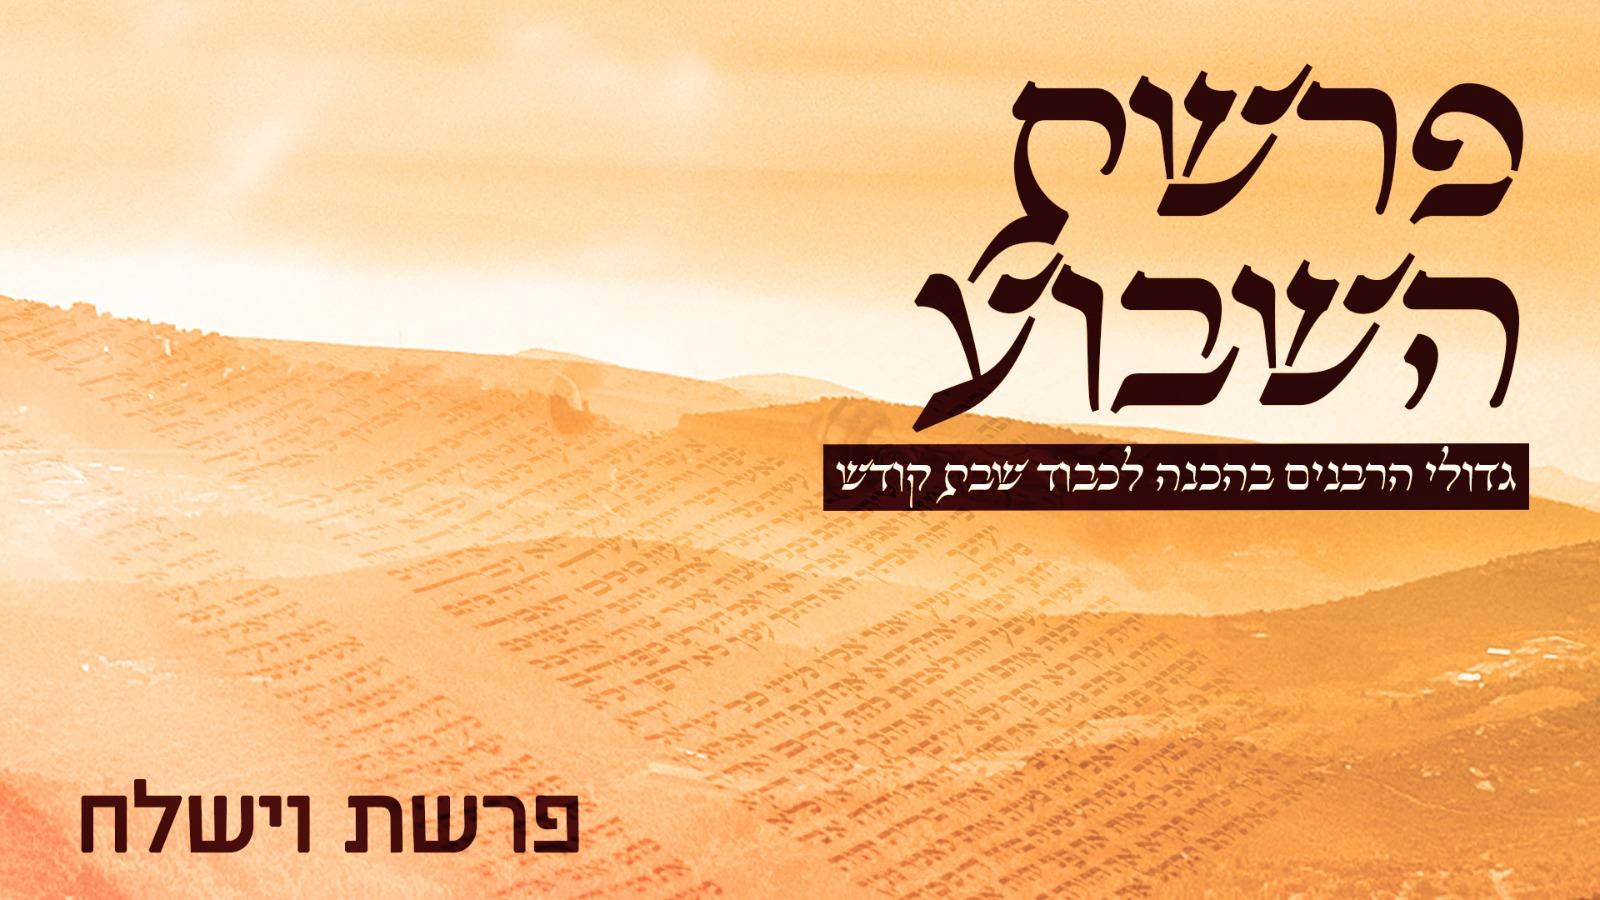 פרשת וישלח - משדר ליל שישי על הפרשה - גדולי הרבנים בחידושים על פרשת וישלח תשפ"א